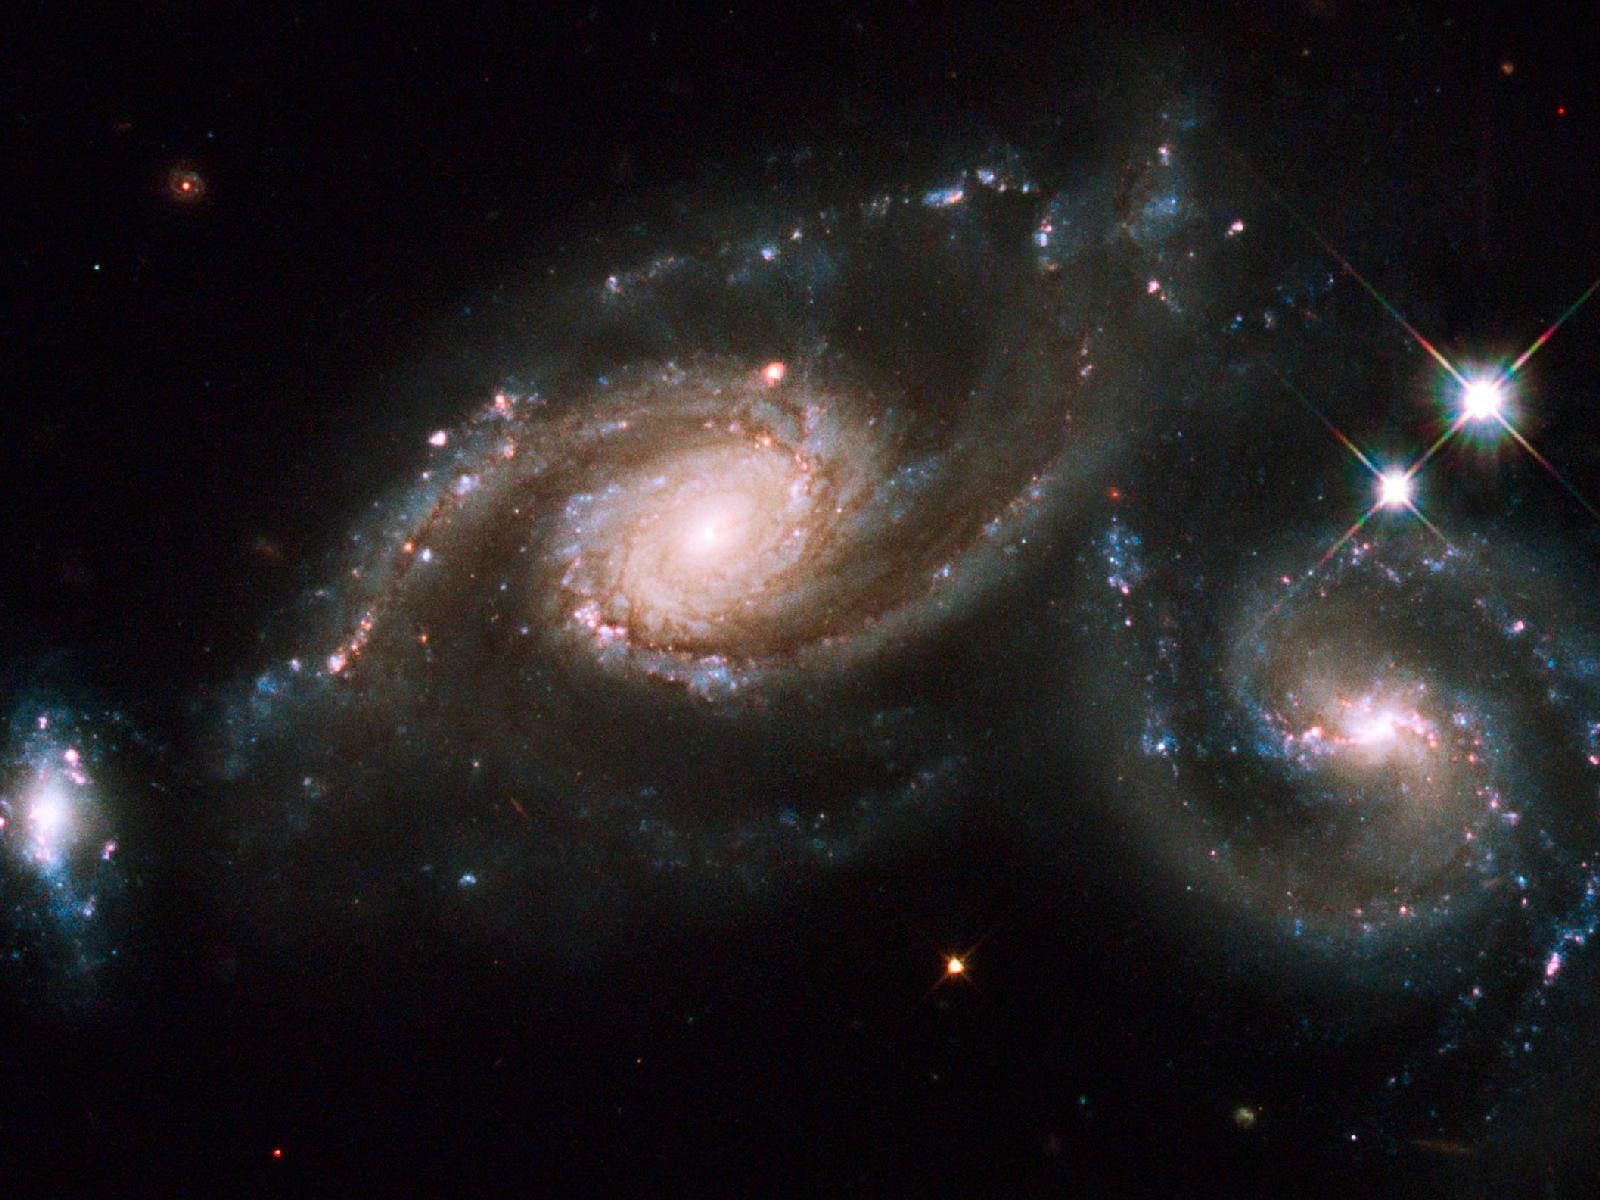 El grupo de galaxias Arp 274 captado por el telescopio Hubble.